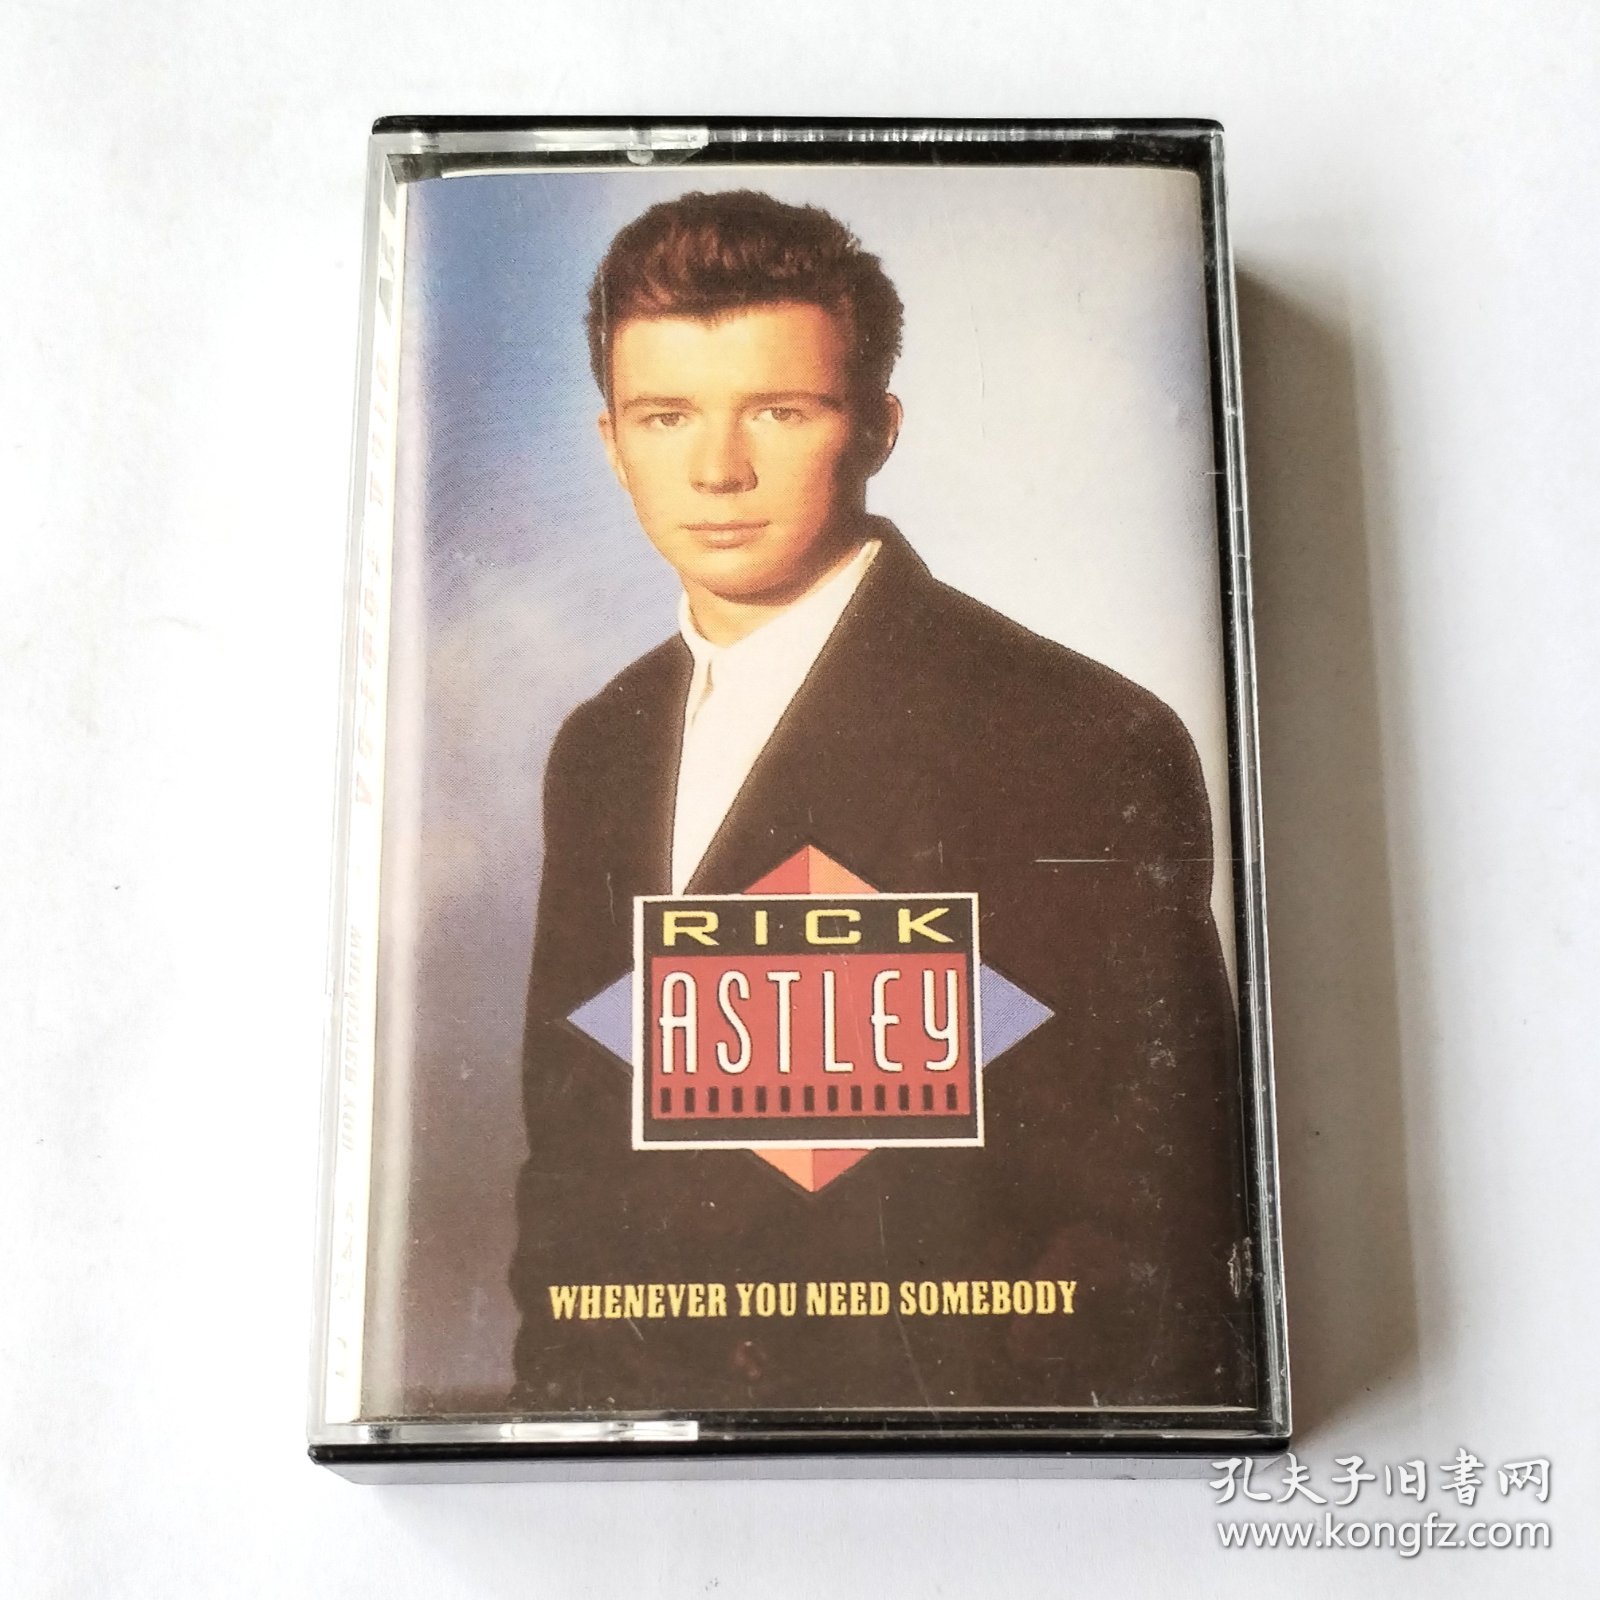 西班牙版 Rick Astley - Whenever You Need Somebody 西班牙版磁带 二手八成新 A面播放正常 B面左声道没声音 便宜处理